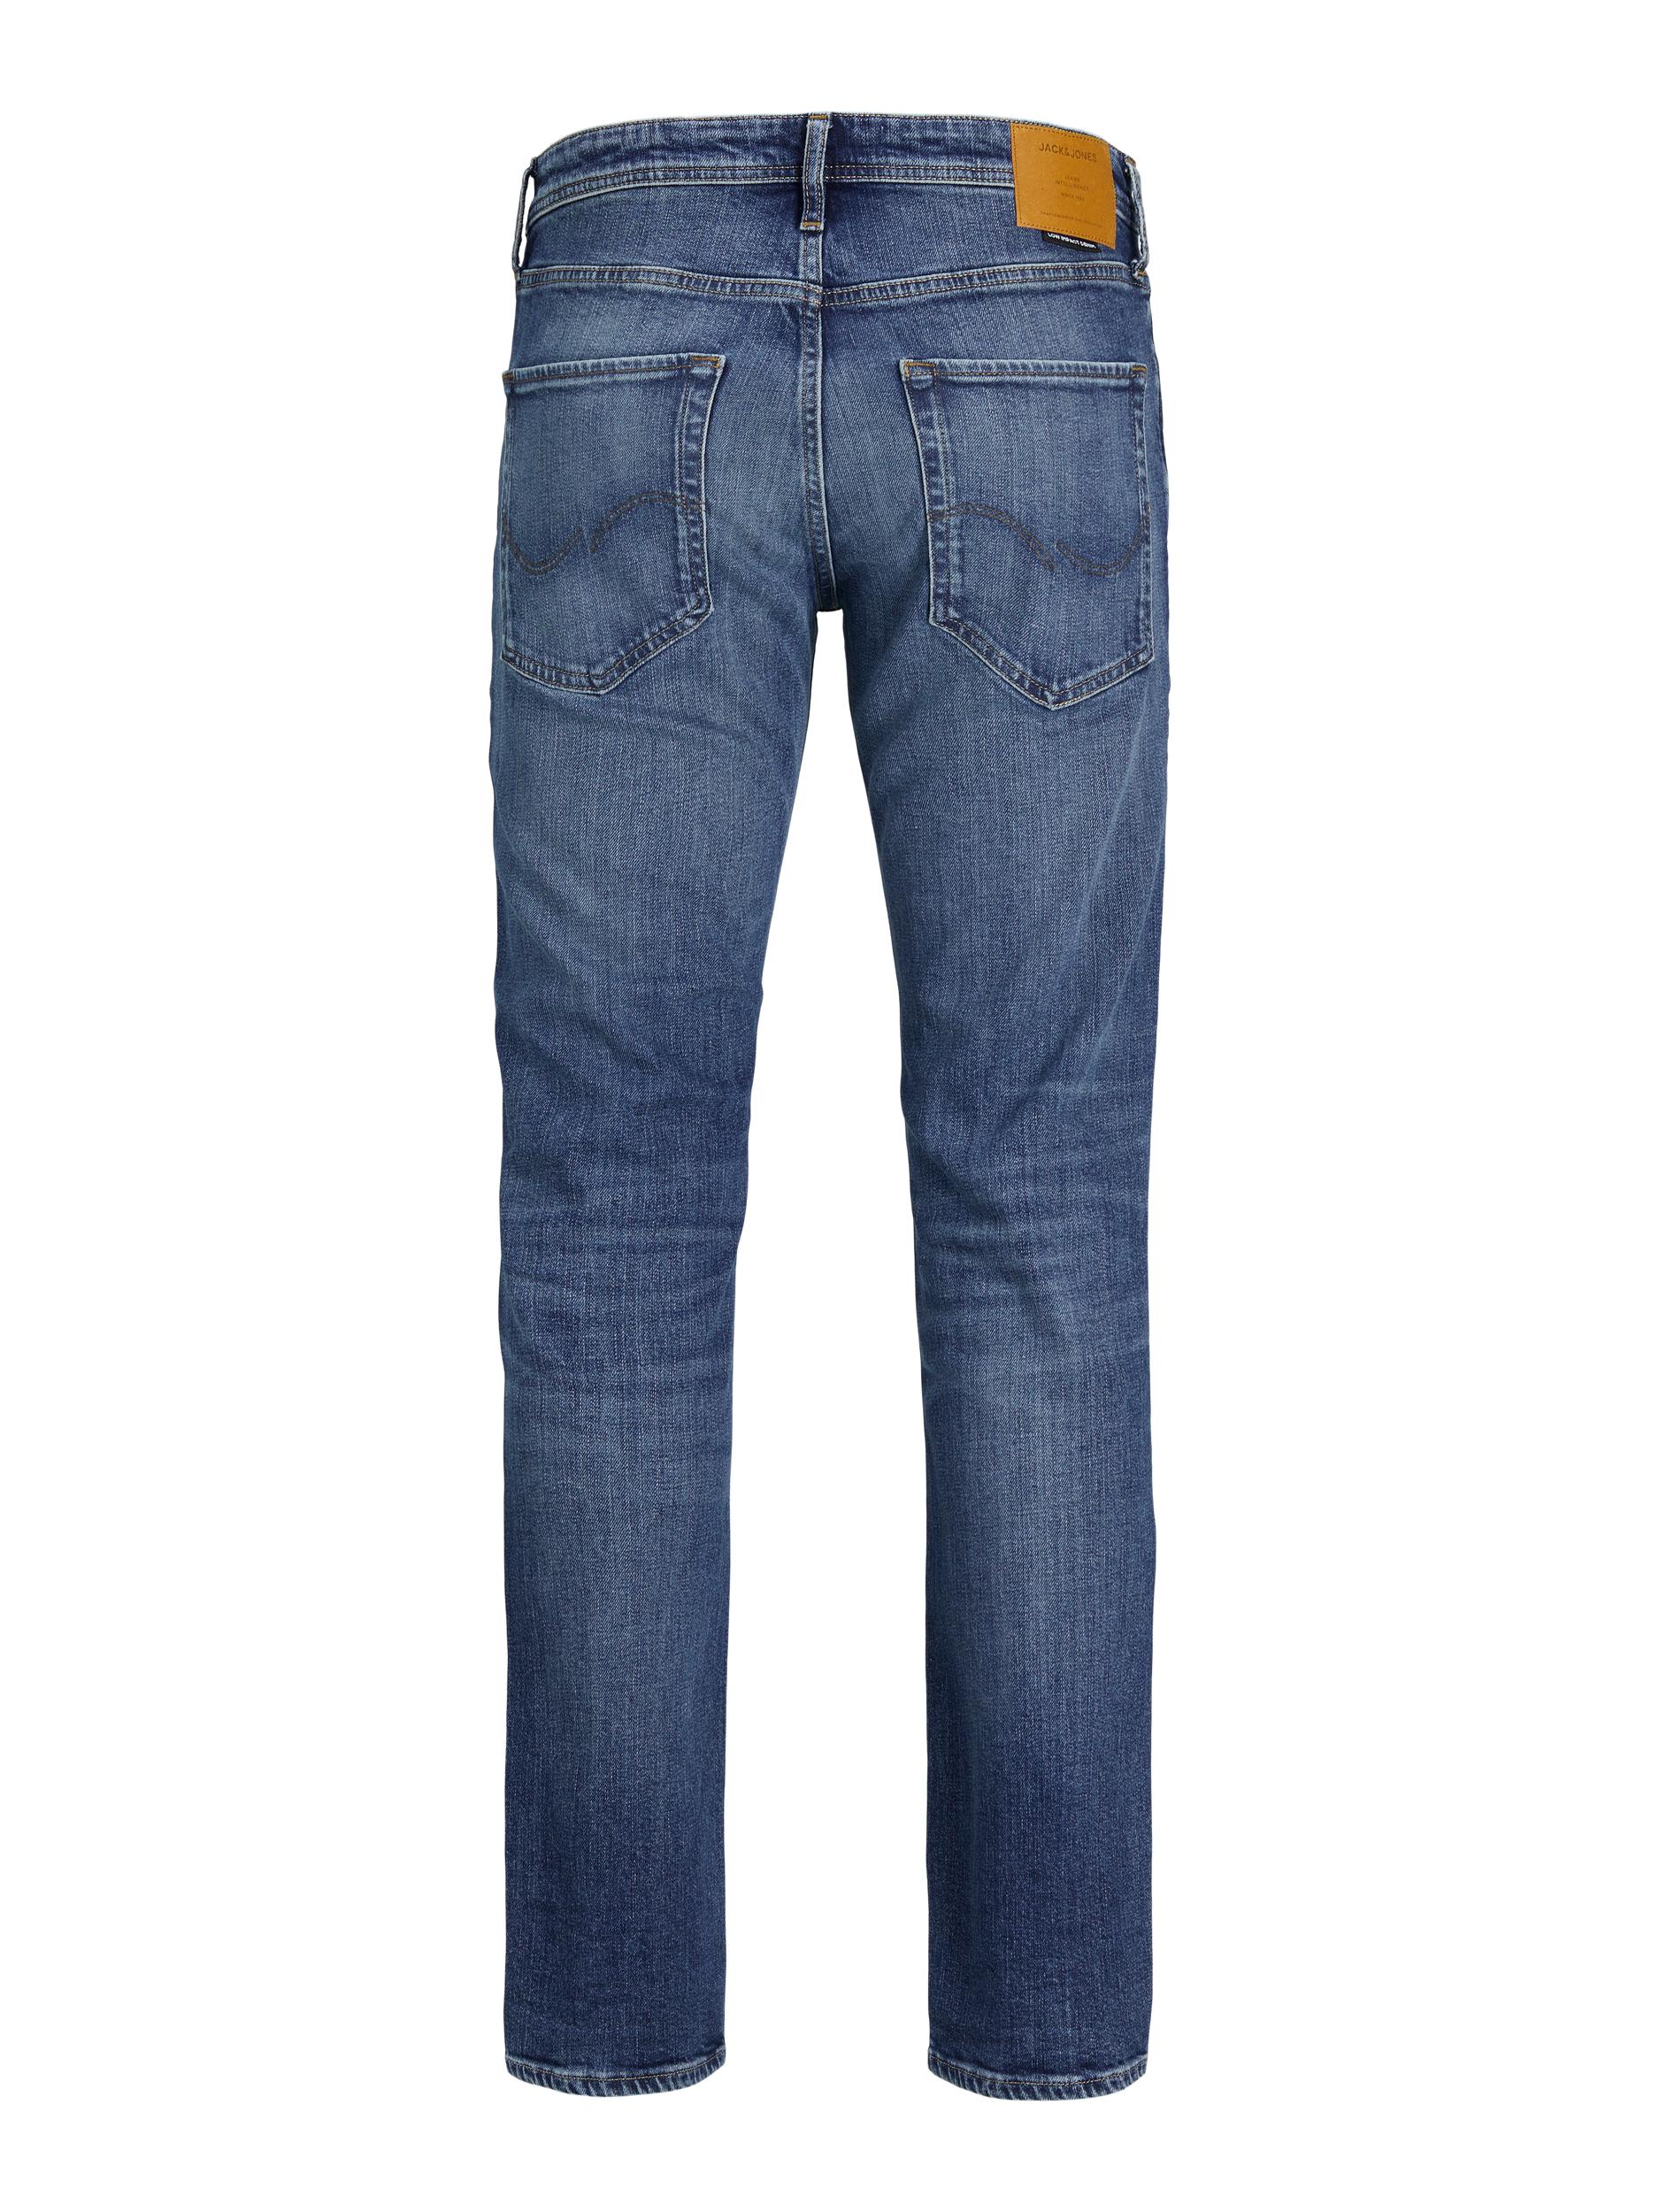 Clark Jeans, Blue Denim, W31/L32